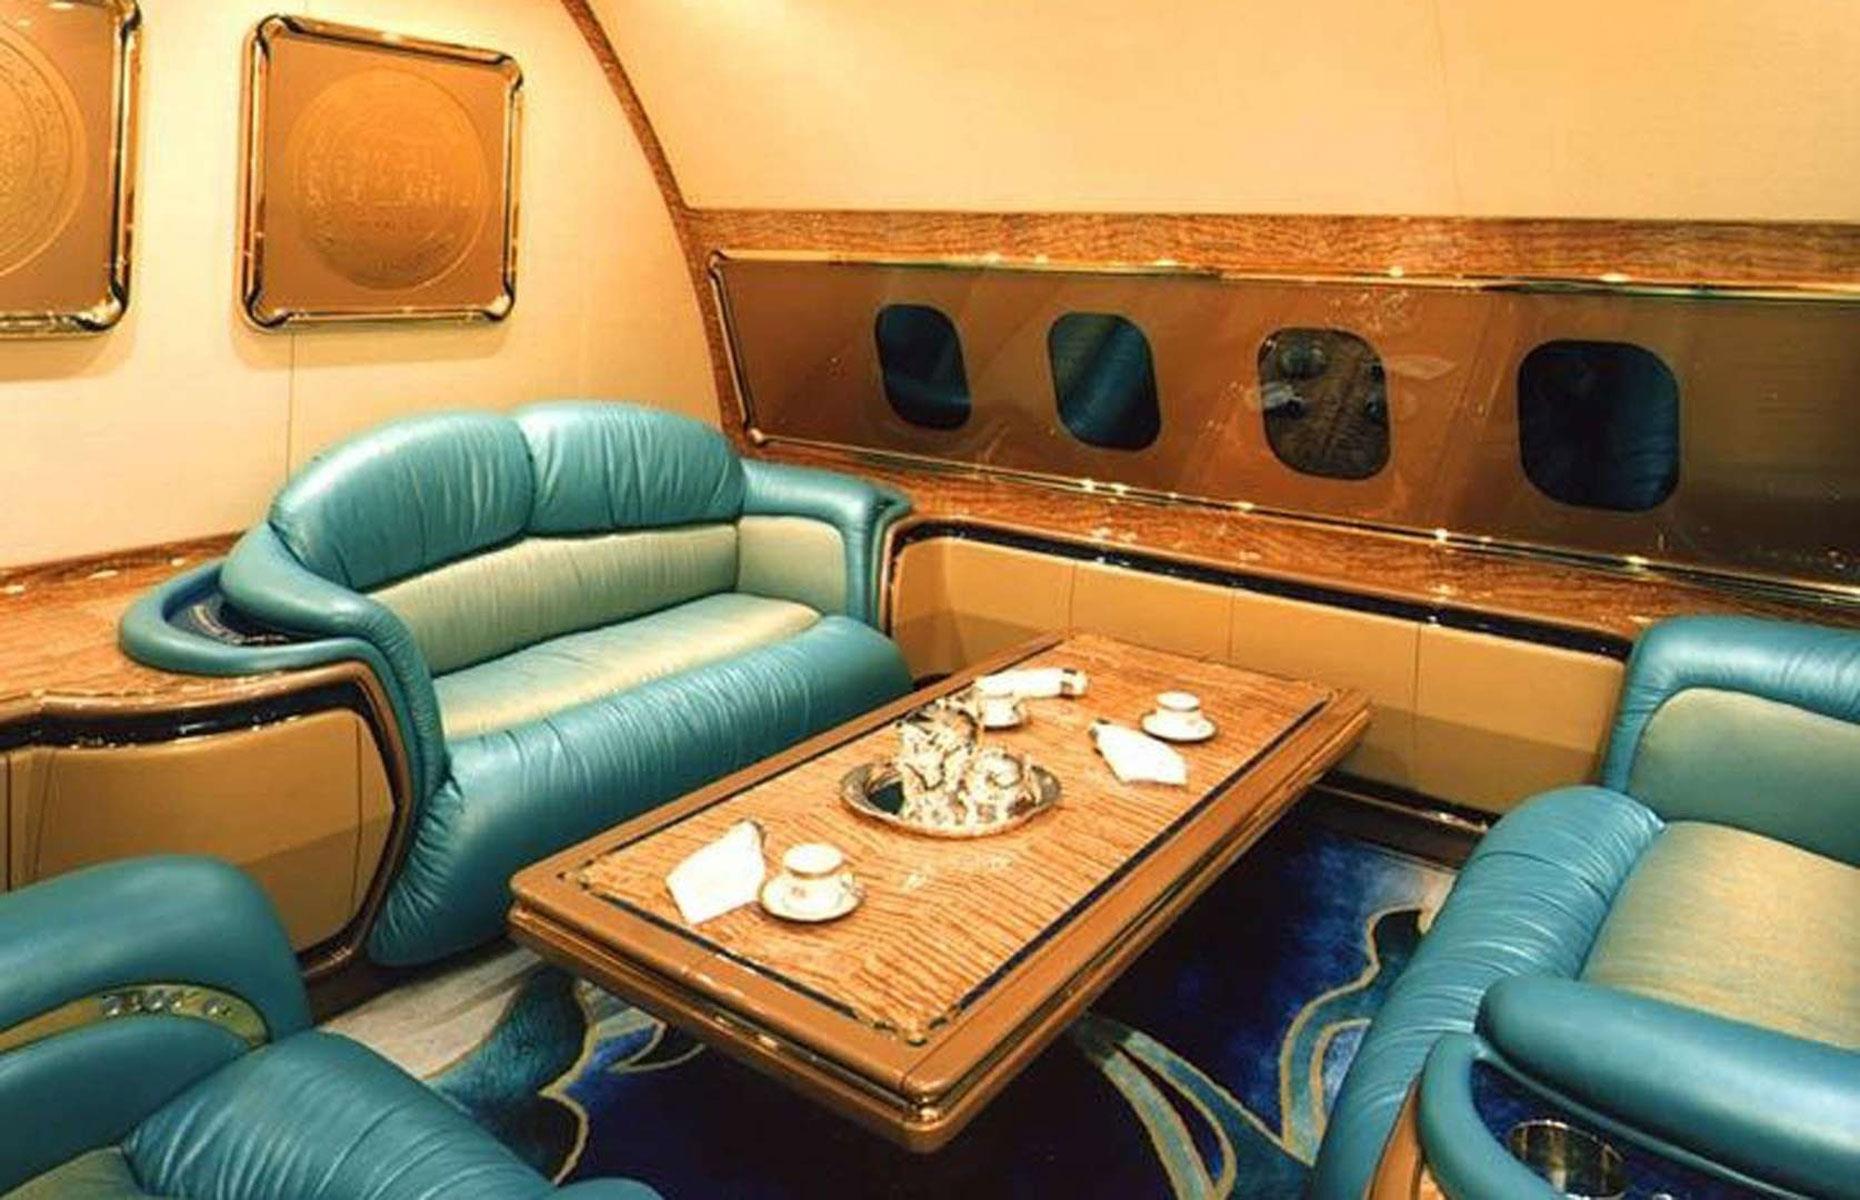 Ebenso dekadent wie Trumps Jet ist auch die Boeing 747-430 des Sultans von Brunei. Der Autokrat gab 100 Millionen US-Dollar (89,4 Mio. Euro) für den Jumbo-Jet aus und steckte weitere 120 Millionen US-Dollar (107,2 Mio. Euro) in die Kabinenausstattung. Zum Luxus zählen Verzierungen aus 24-karätigem Gold, Designer-Kristallarmaturen und teure Ledersofas.